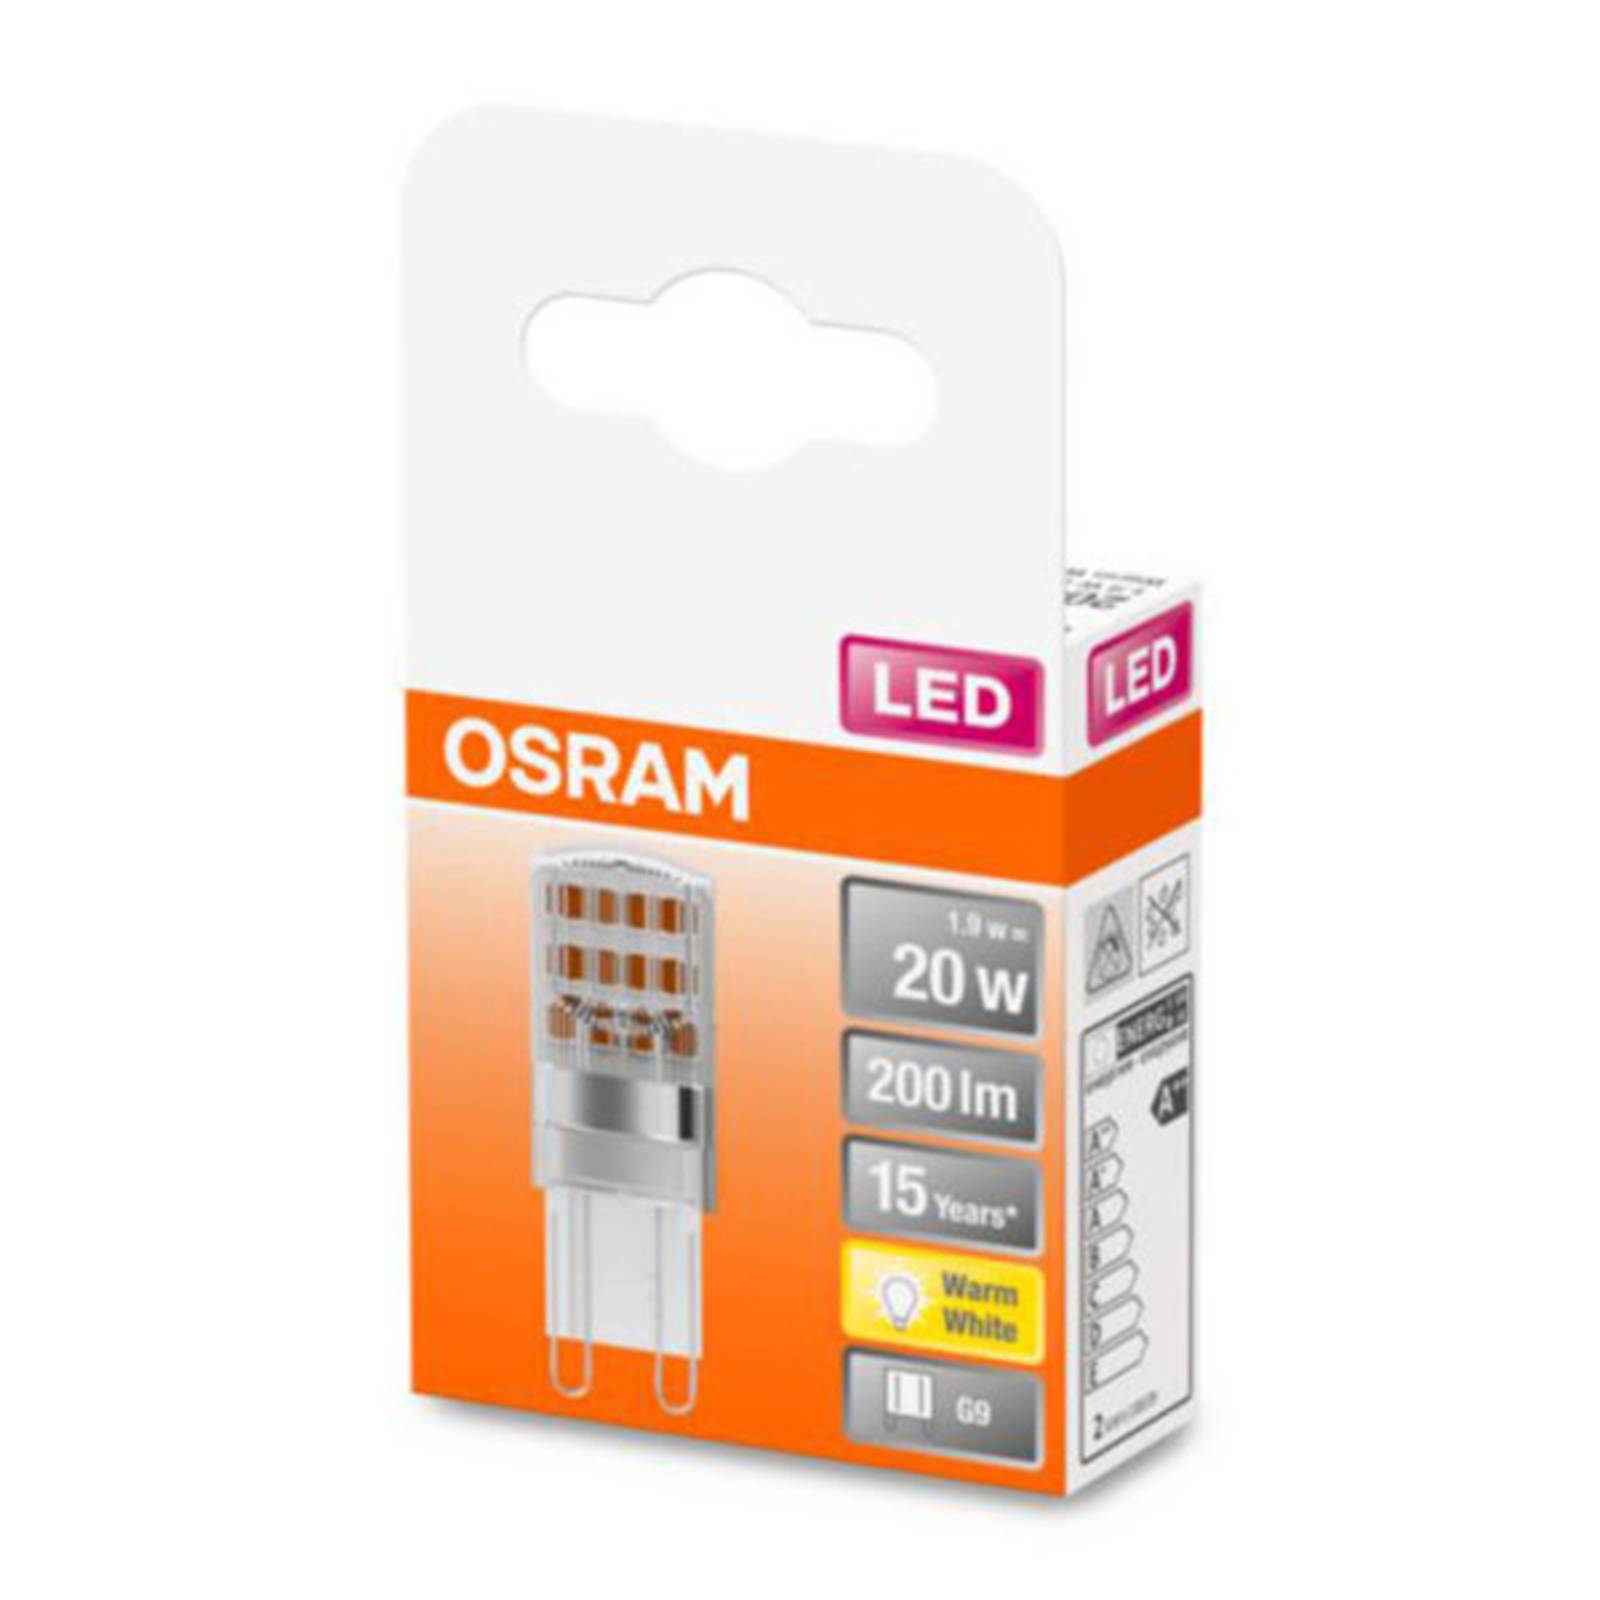 OSRAM OSRAM LED žárovka kolíková G9 1,9W 2 700 K čirá